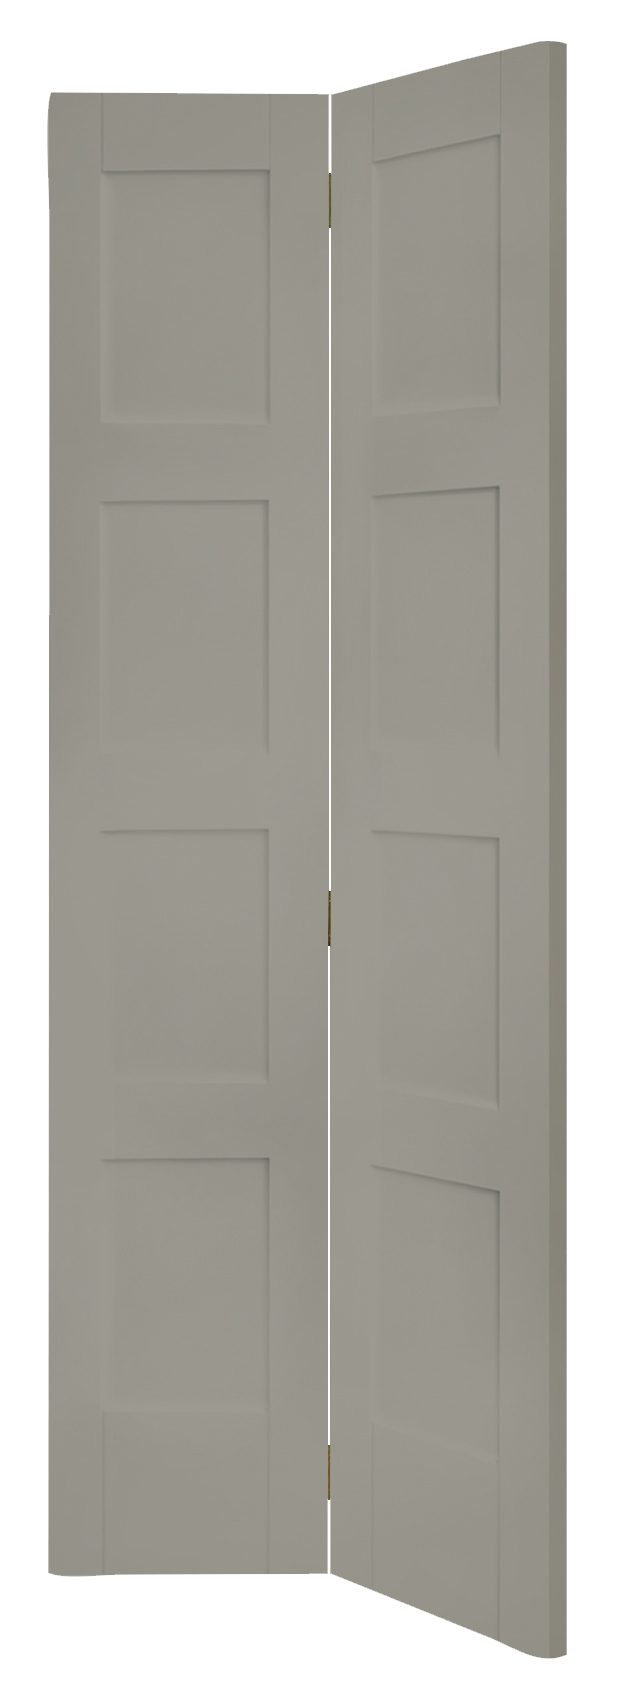 Shaker 4 Panel Bi-Fold Internal White Primed Door – Slate, 1981 x 686 x 35 mm